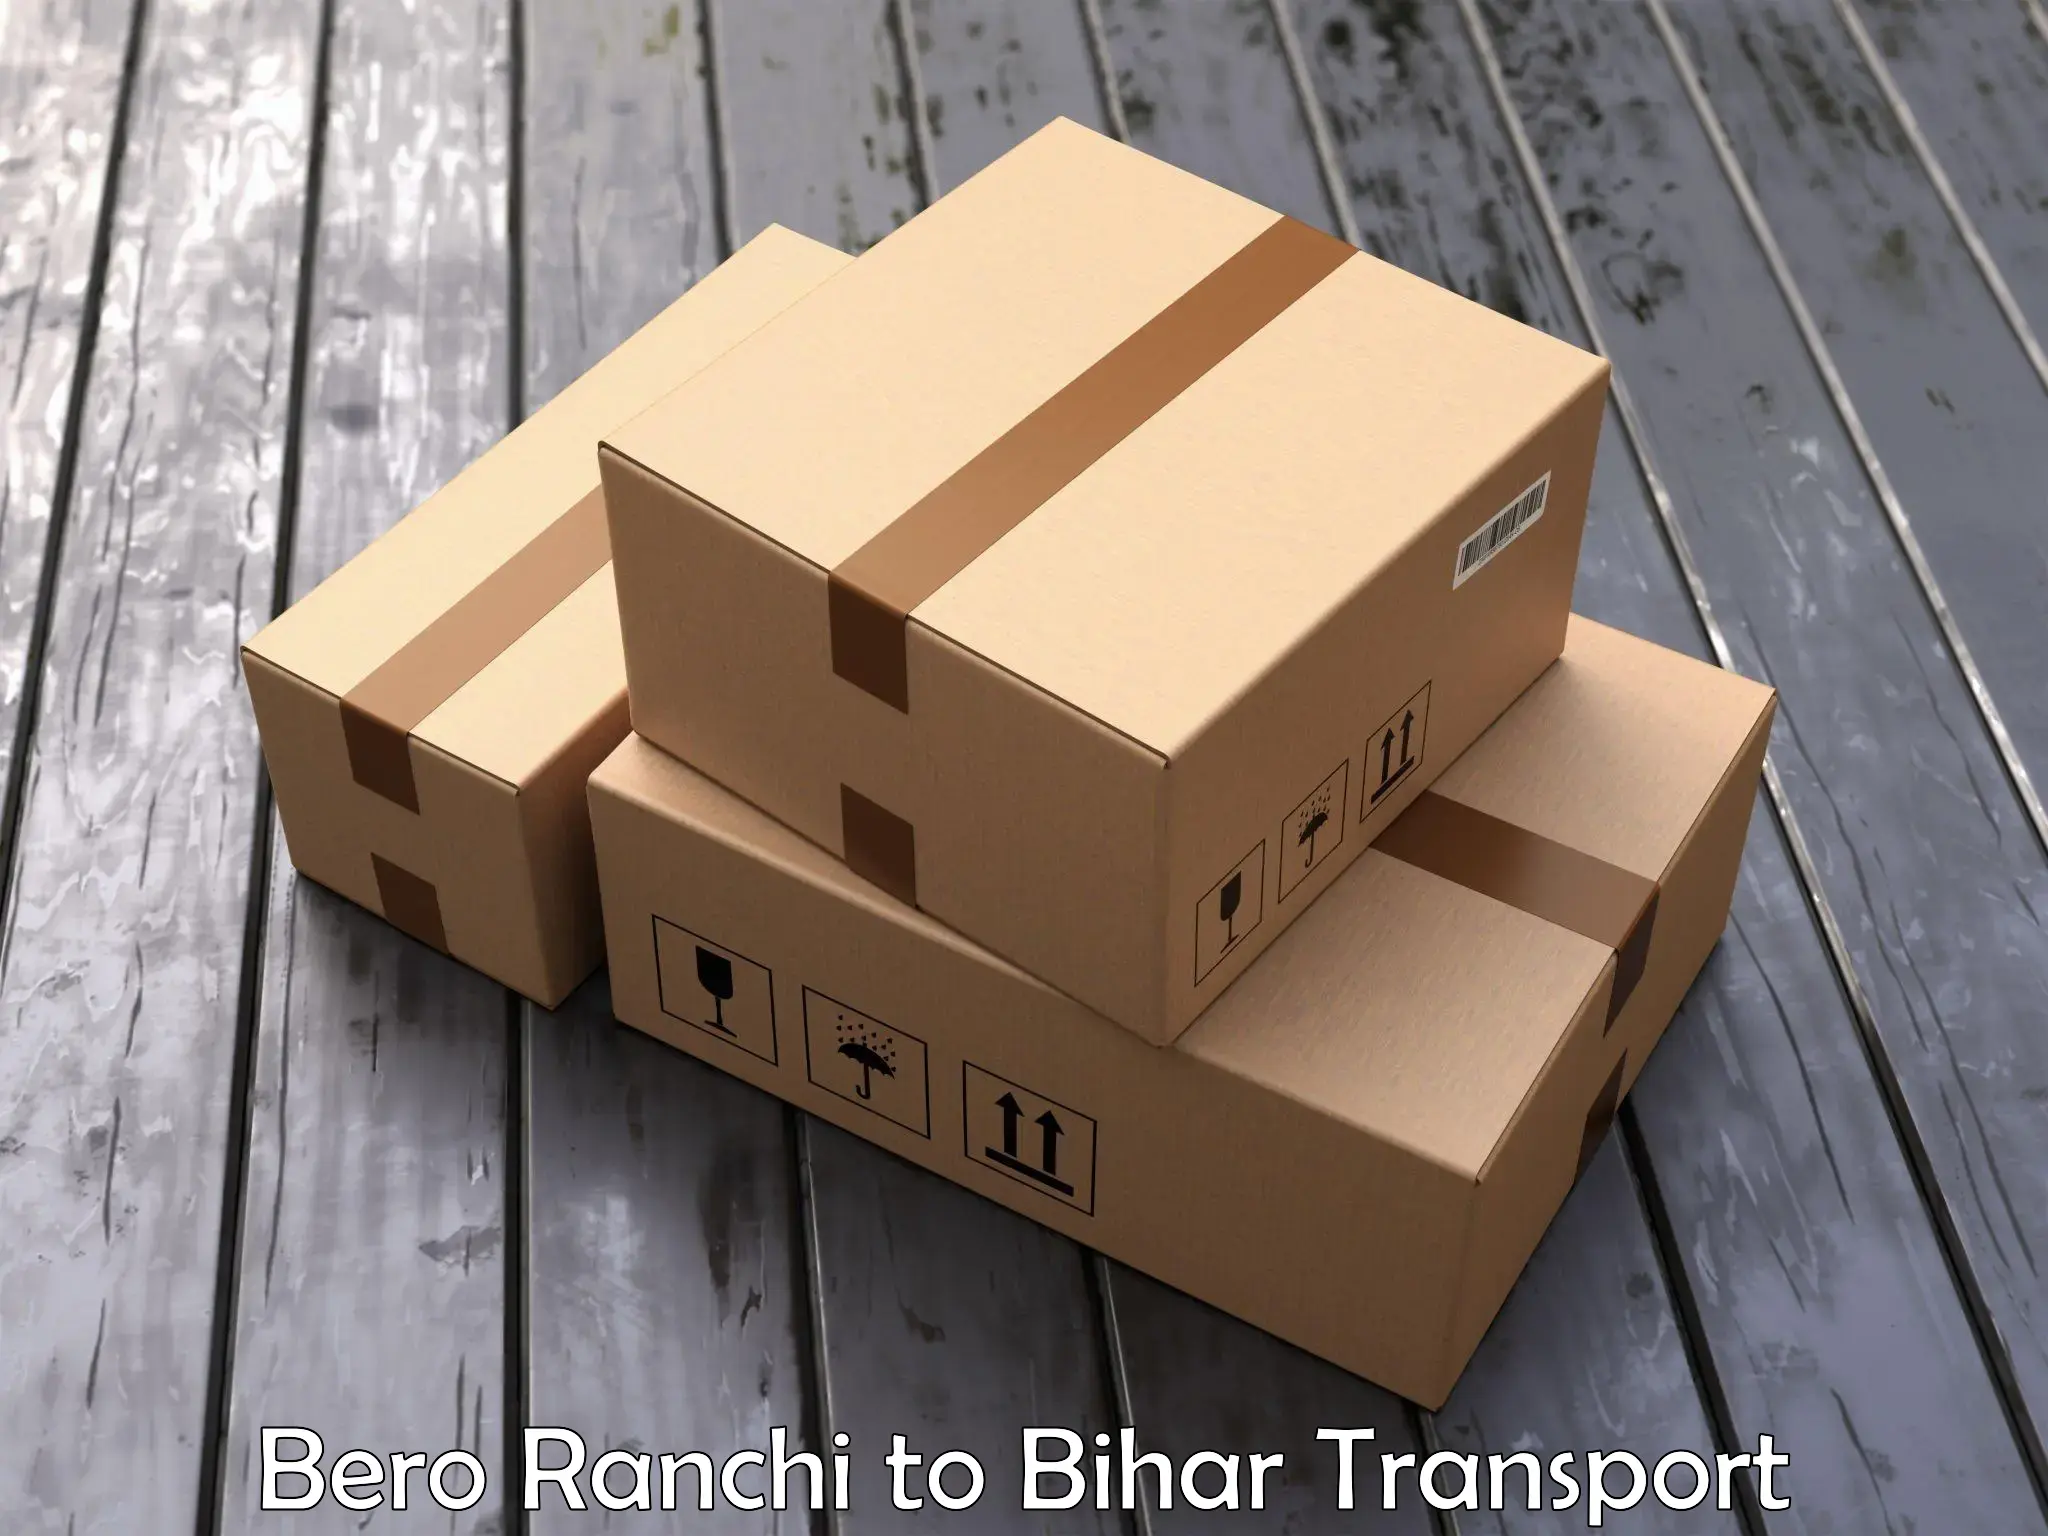 Bike shipping service Bero Ranchi to Aurangabad Bihar